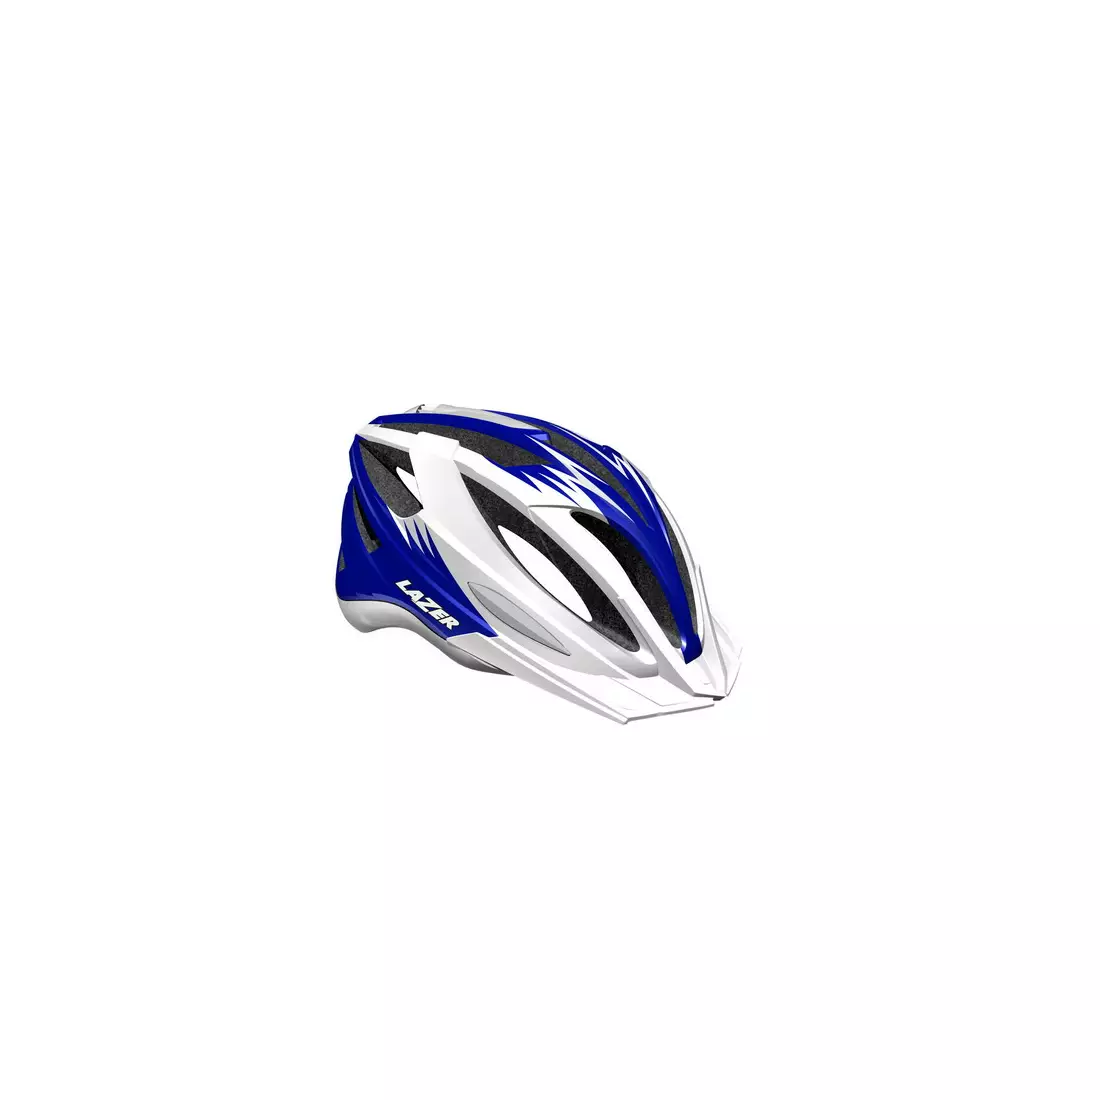 LAZER - CLASH MTB bicycle helmet, color: white blue